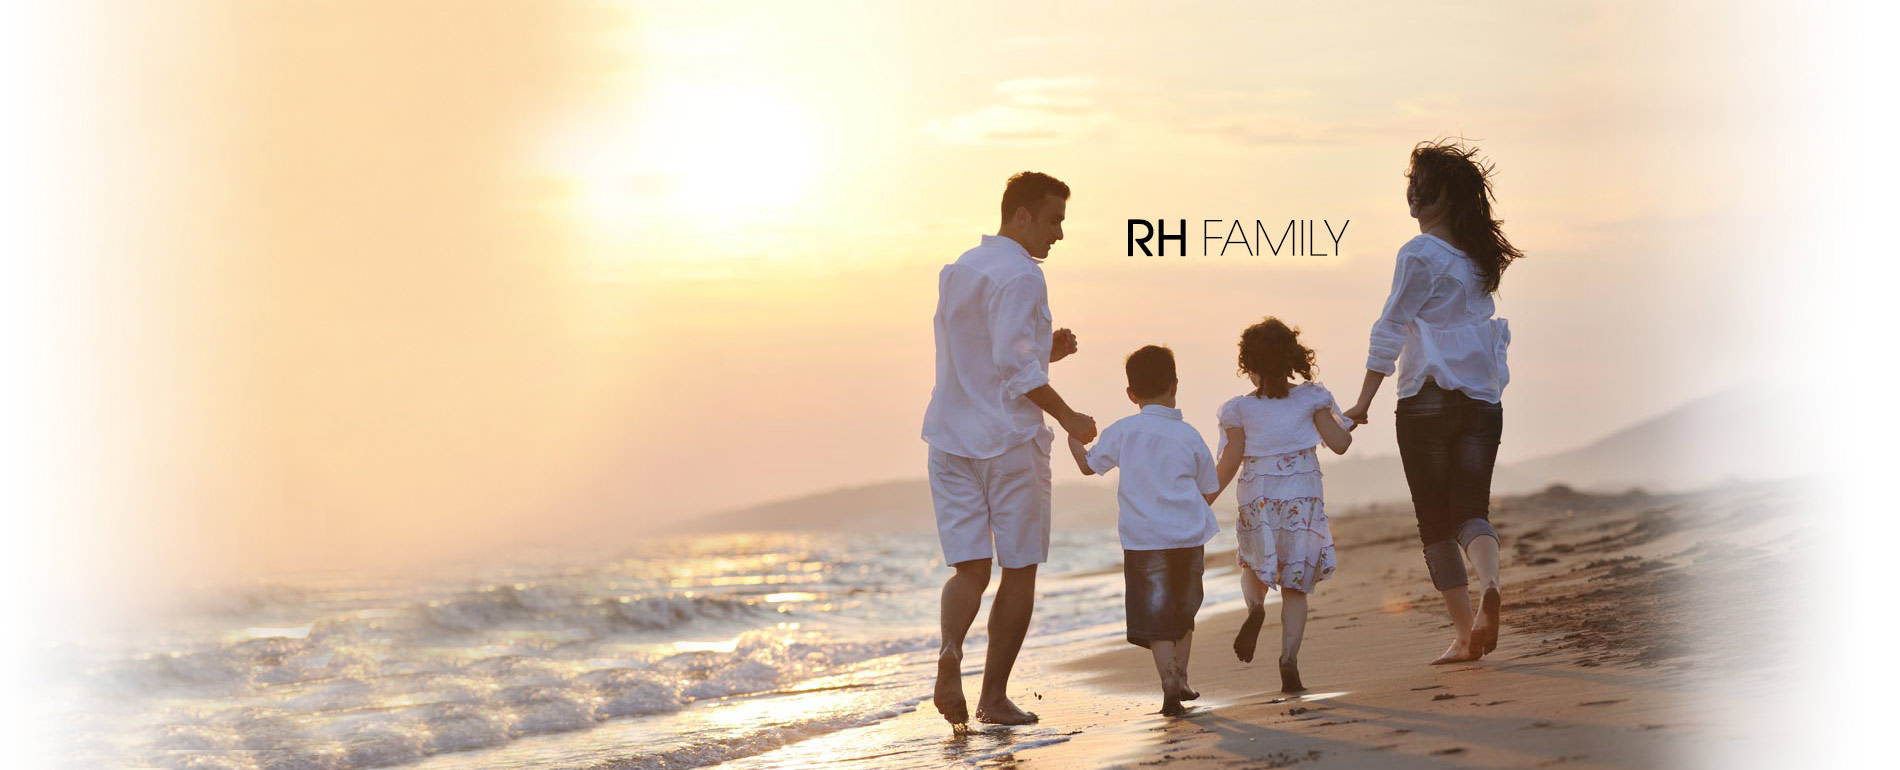 Rh-family